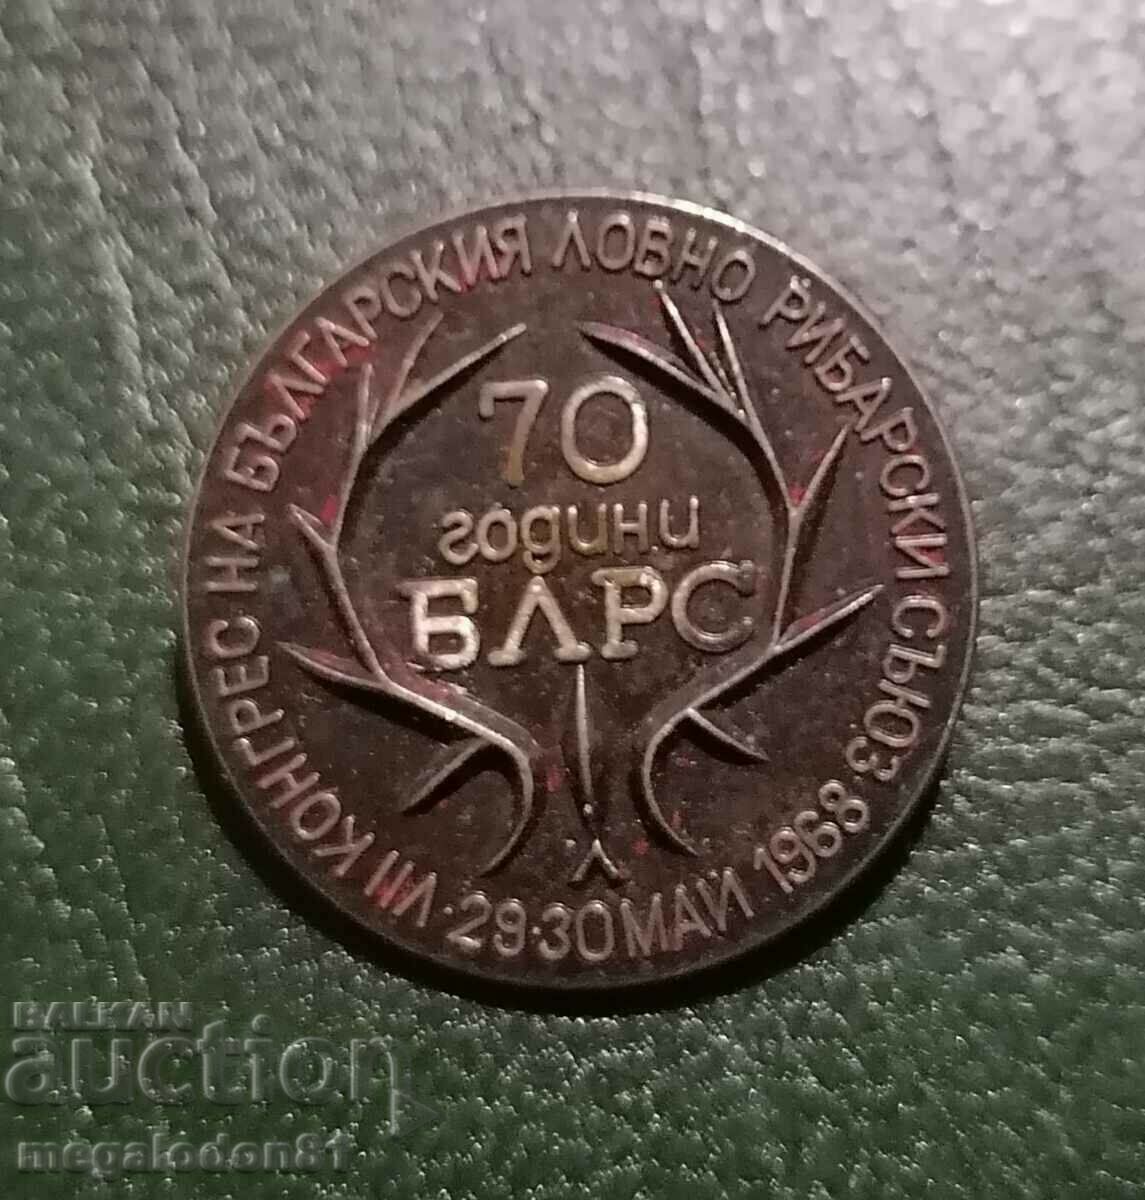 Βουλγαρία - 70 χρόνια BLRS